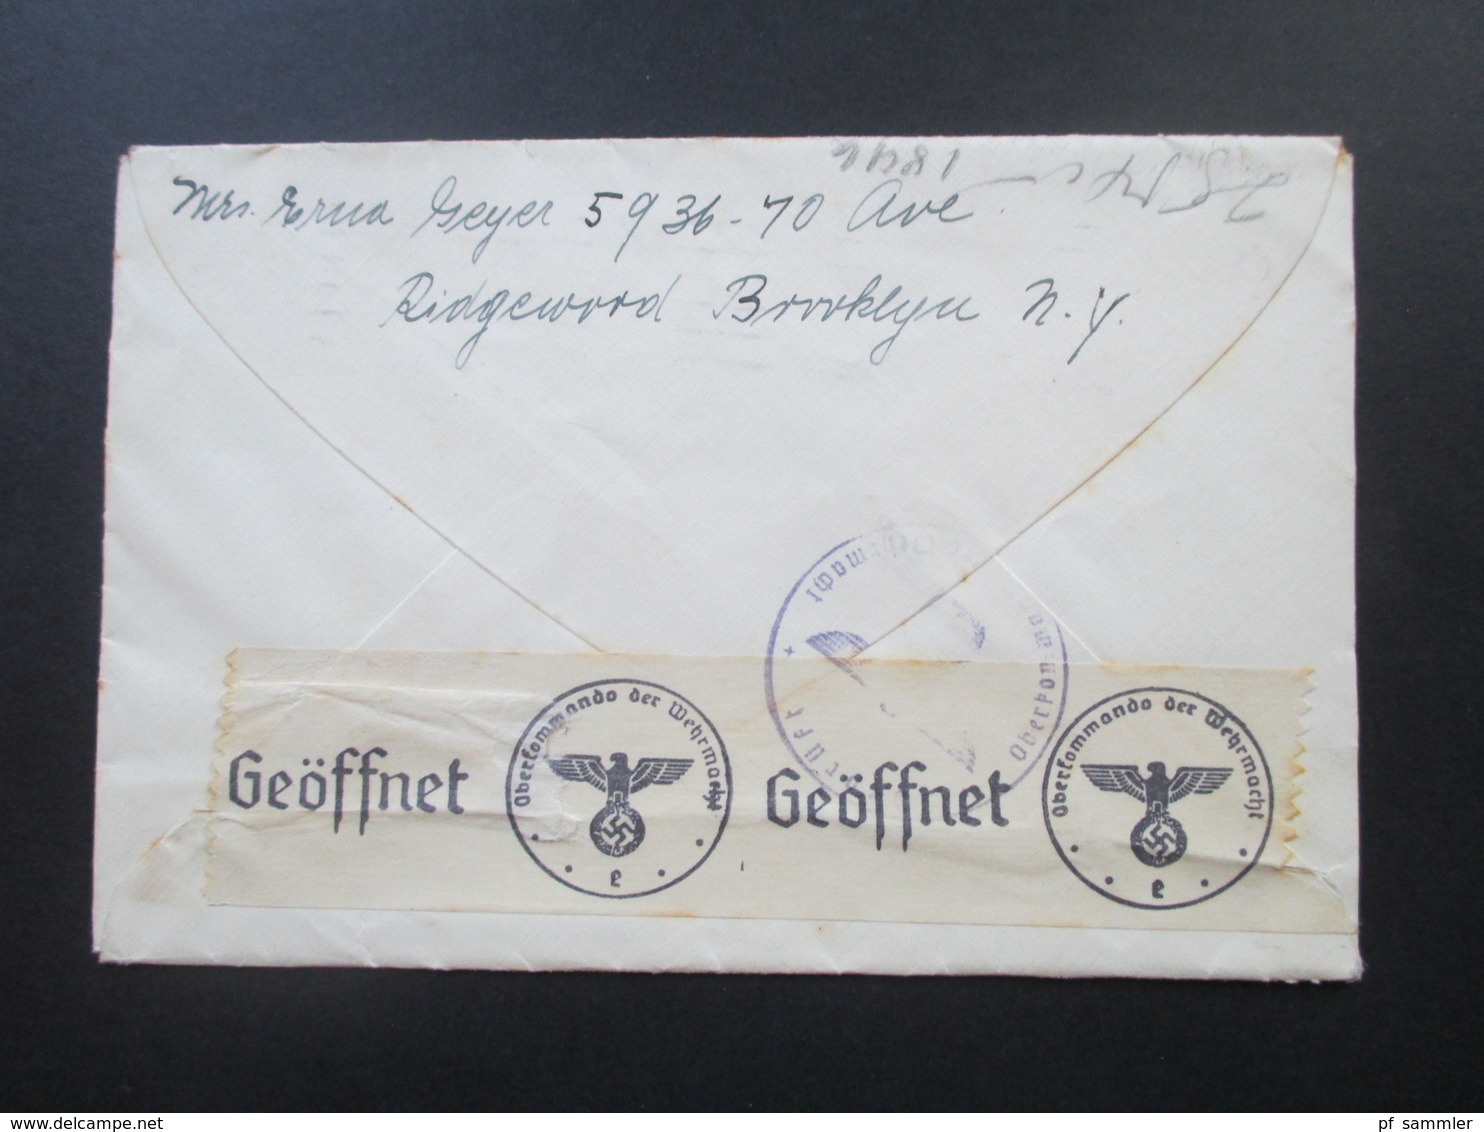 USA 1940 / 41 2 Belege nach Pennewitz Post Königsee mit OKW Zensur / 1x via SS Excalibur. Zensur / Schiffspost